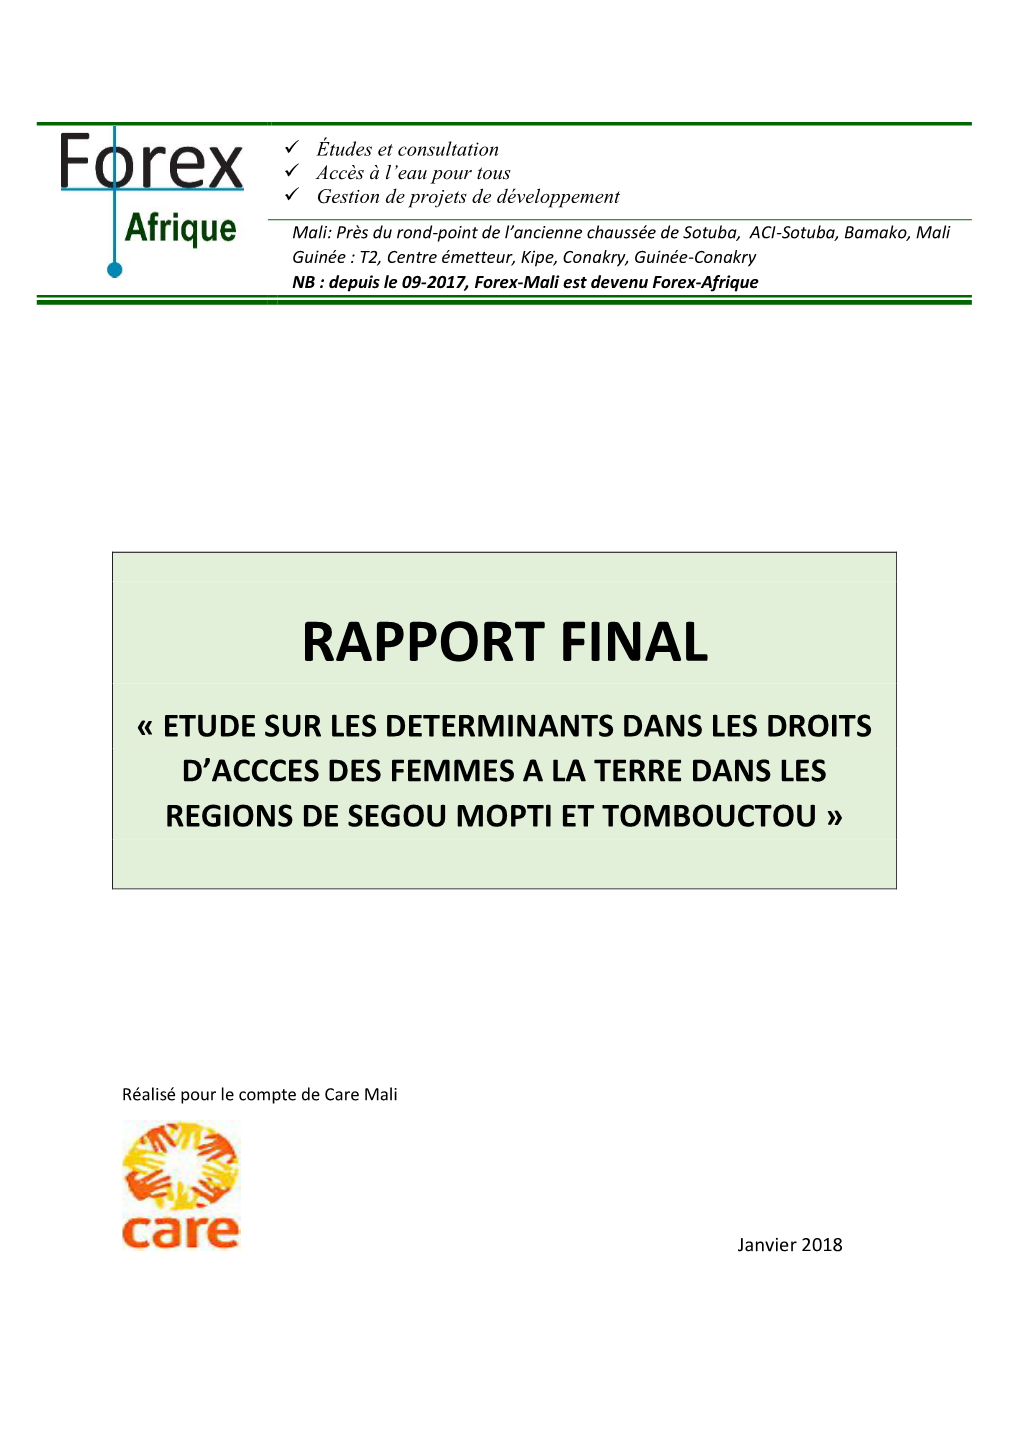 Rapport Final